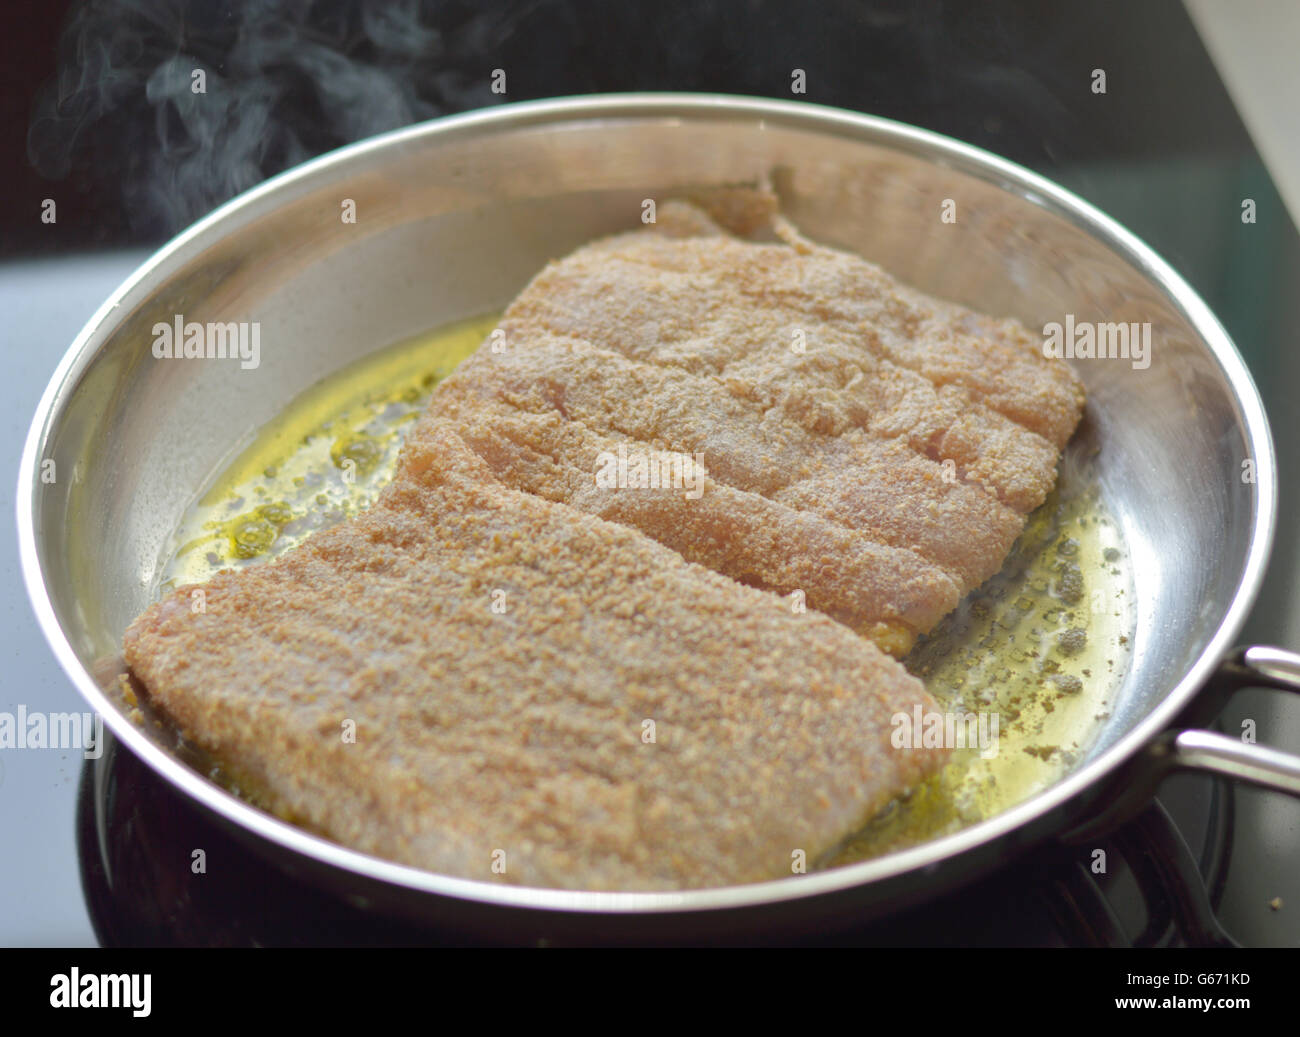 Frischer Kabeljau Kochen zum Abendessen Stockfotografie - Alamy